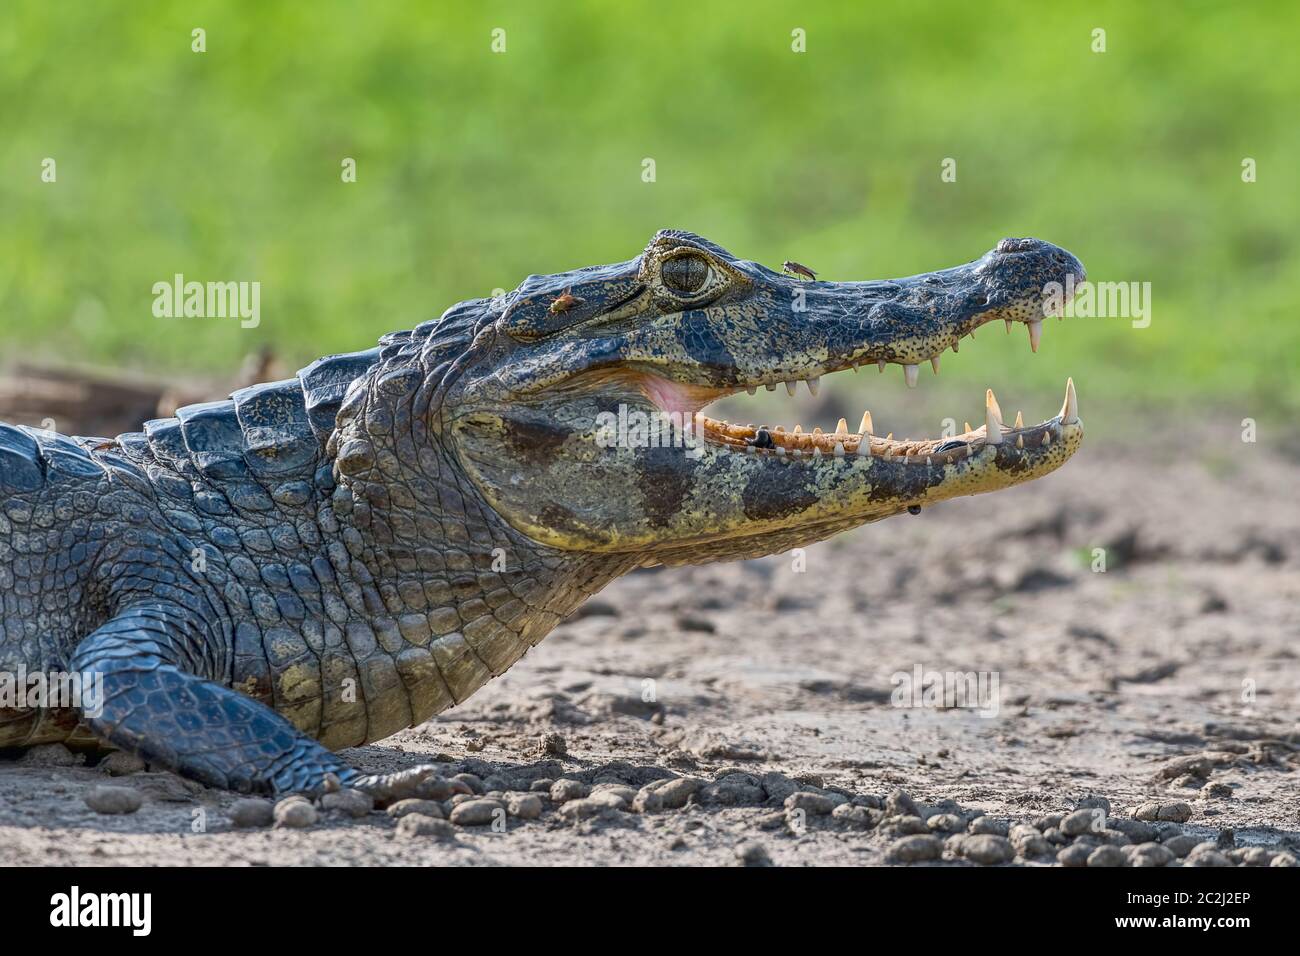 Brillenkaiman (Caiman crocodilus yacare), mit Fliegen und Blutegeln, Tierportrait, Gegenlicht, Seitenansicht, Pantanal, Mato Grosso, Brasilien Stock Photo